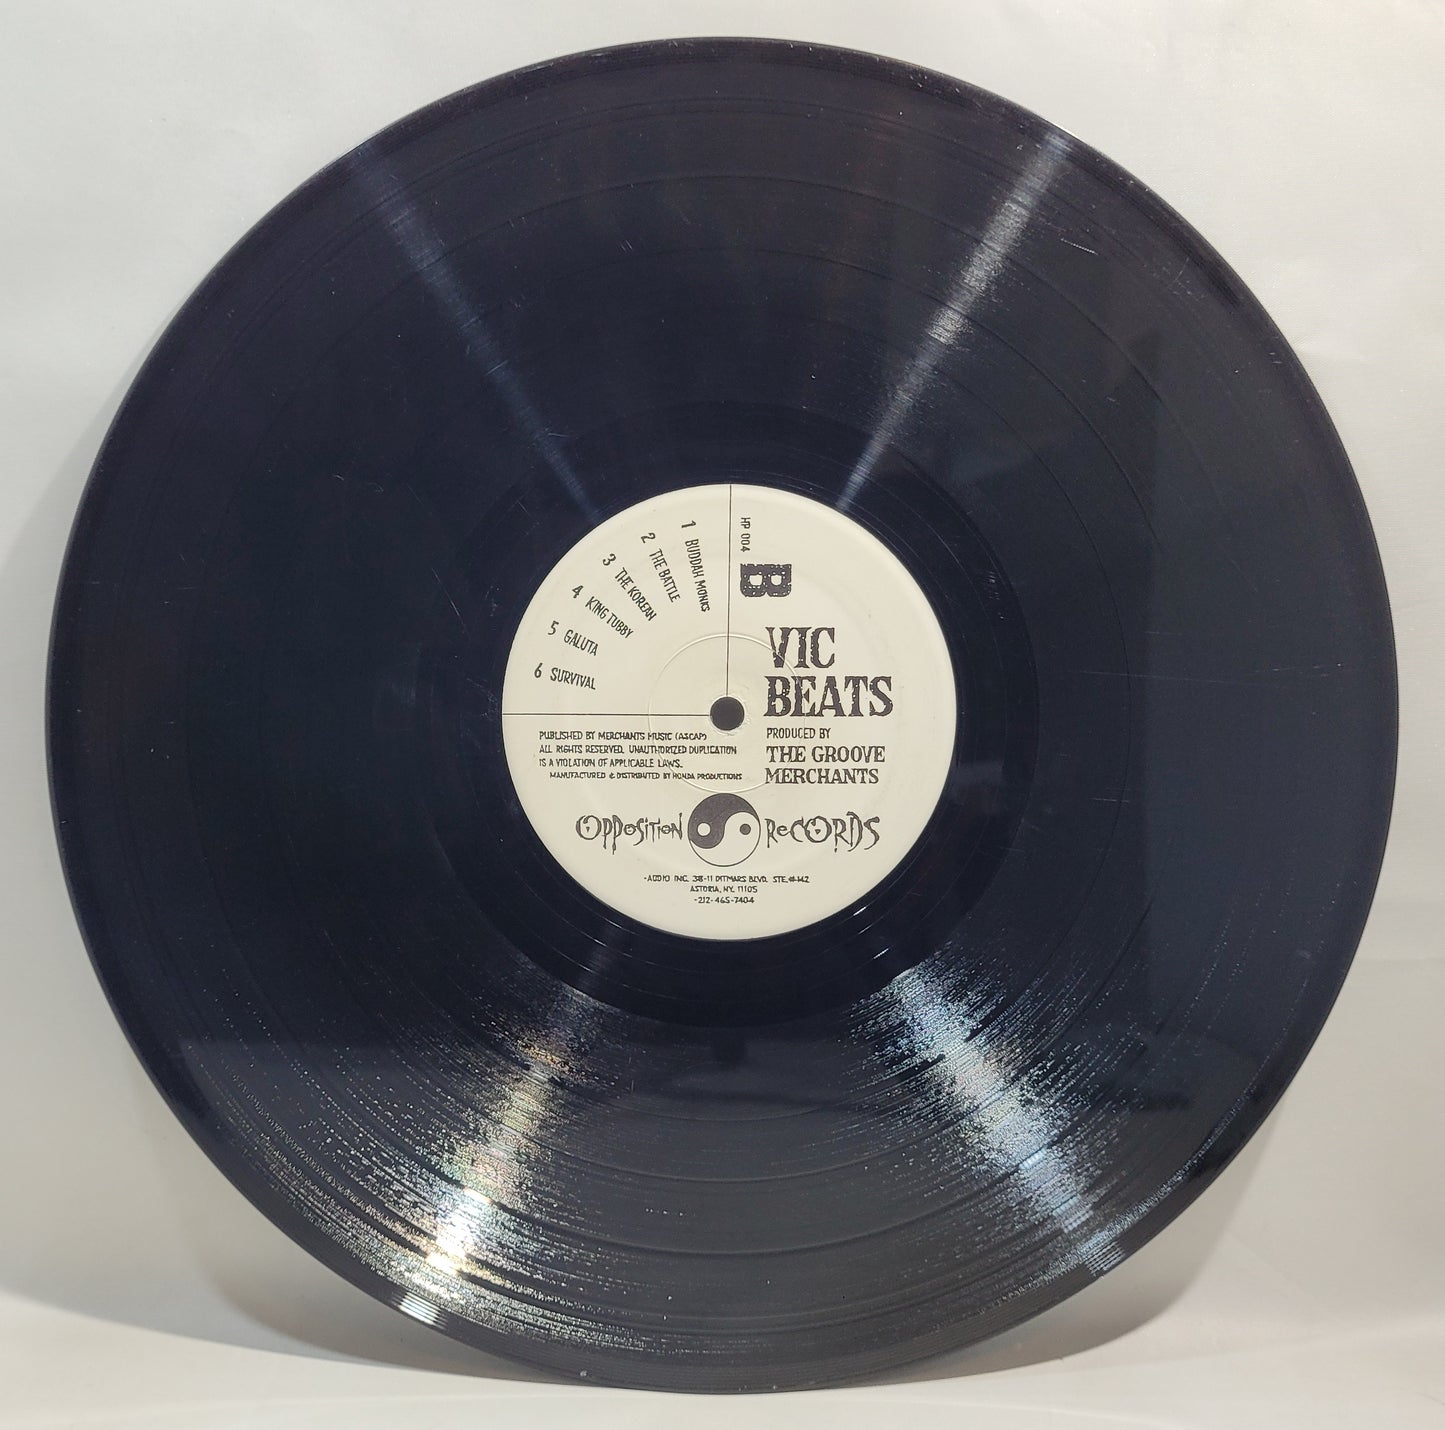 VIC - Vic Beats [Vinyl Record LP]